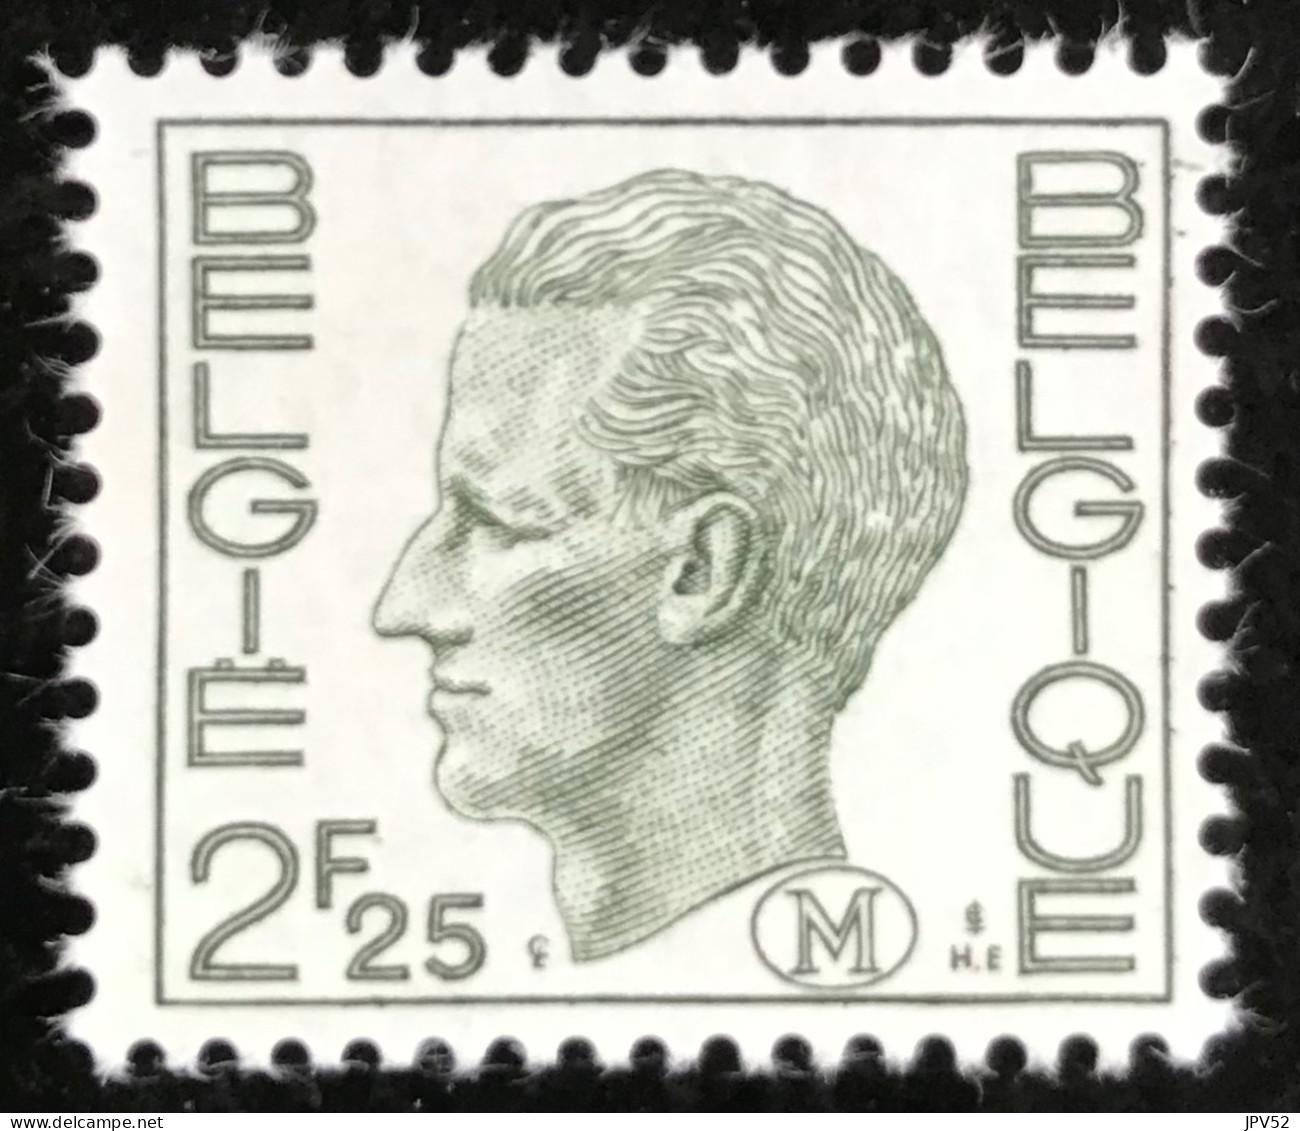 België - Belgique - C18/41 - 1974 - MNH - Michel 4 - Militair - Koning Boudewijn - Briefmarken [M]